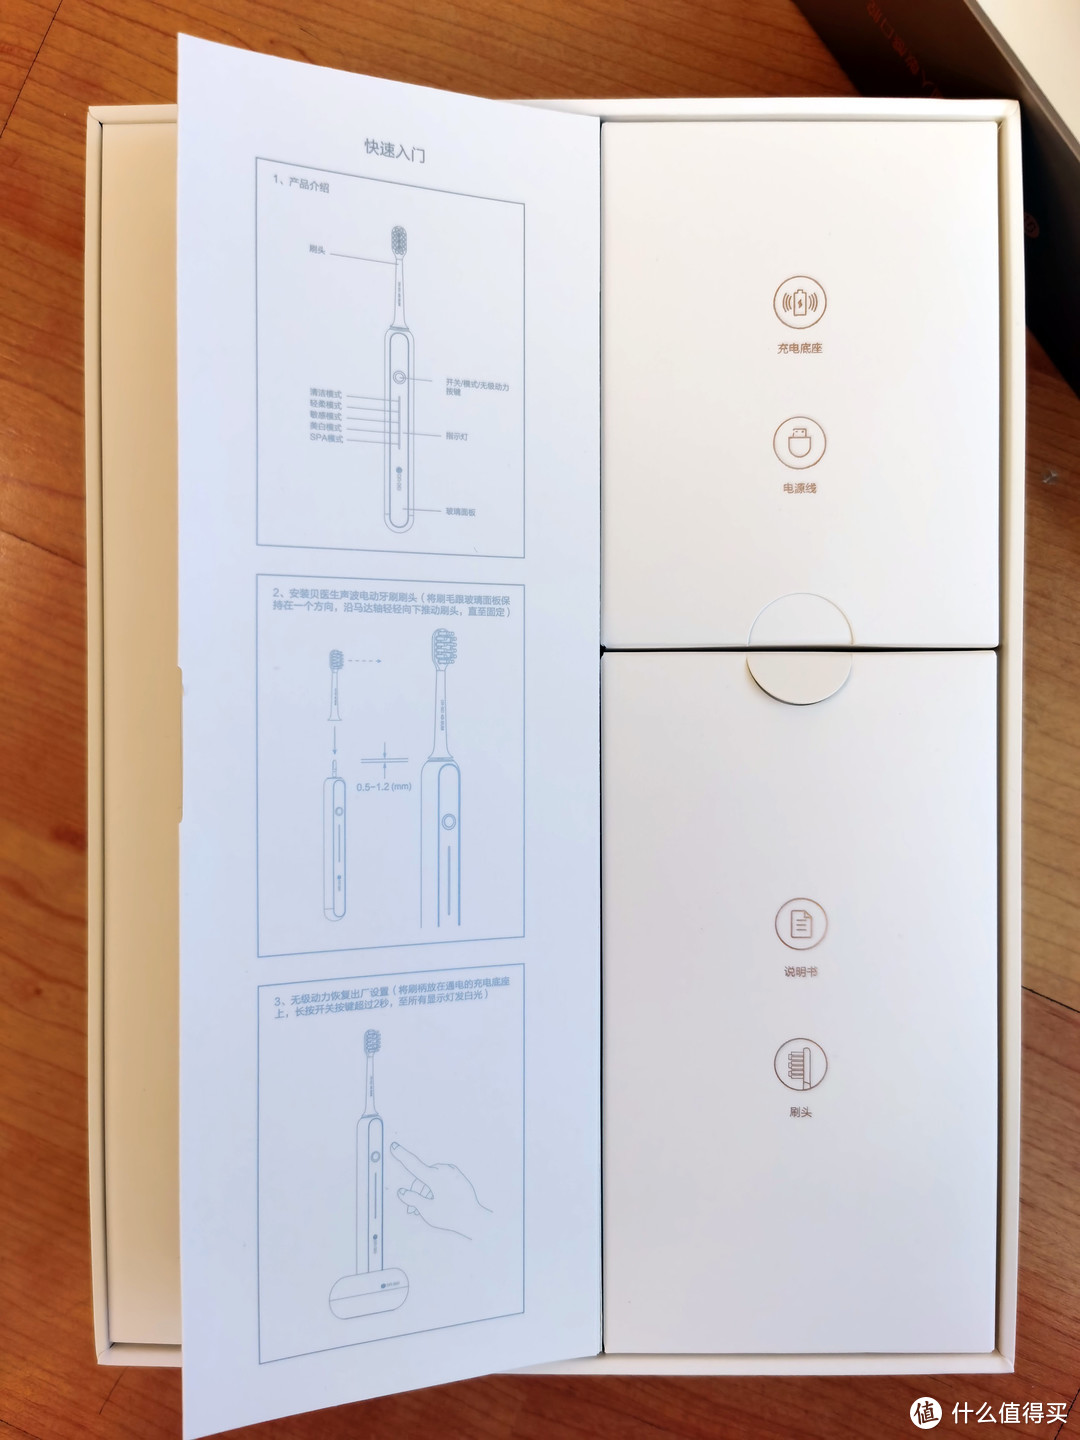 打开挡板后是电动牙刷的快速入门使用方法，右边是产品的配件盒